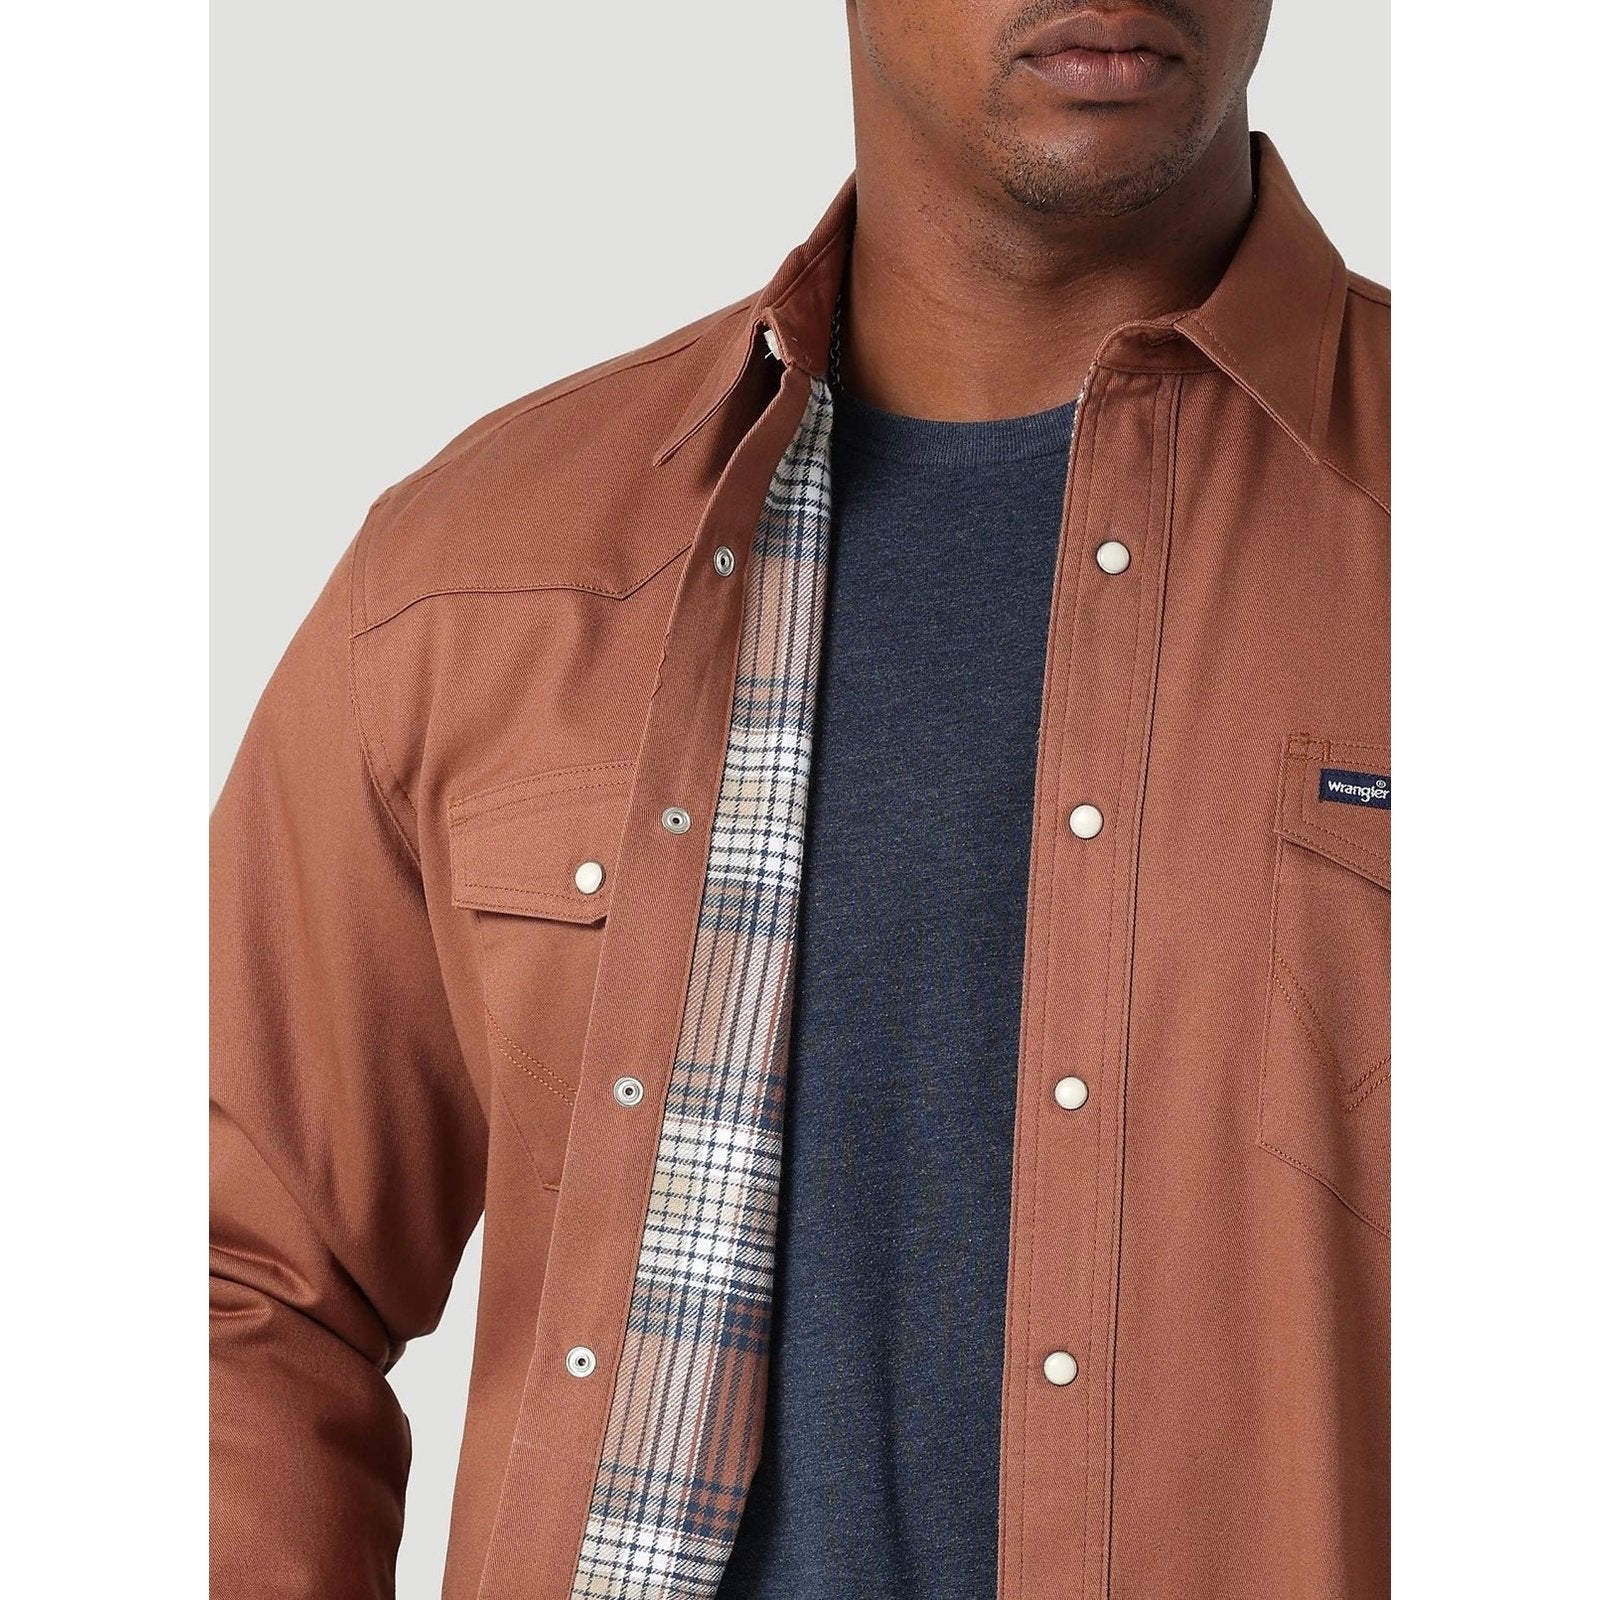 Wrangler Men’s Shirt Flannel Lined 112317153 - Wrangler